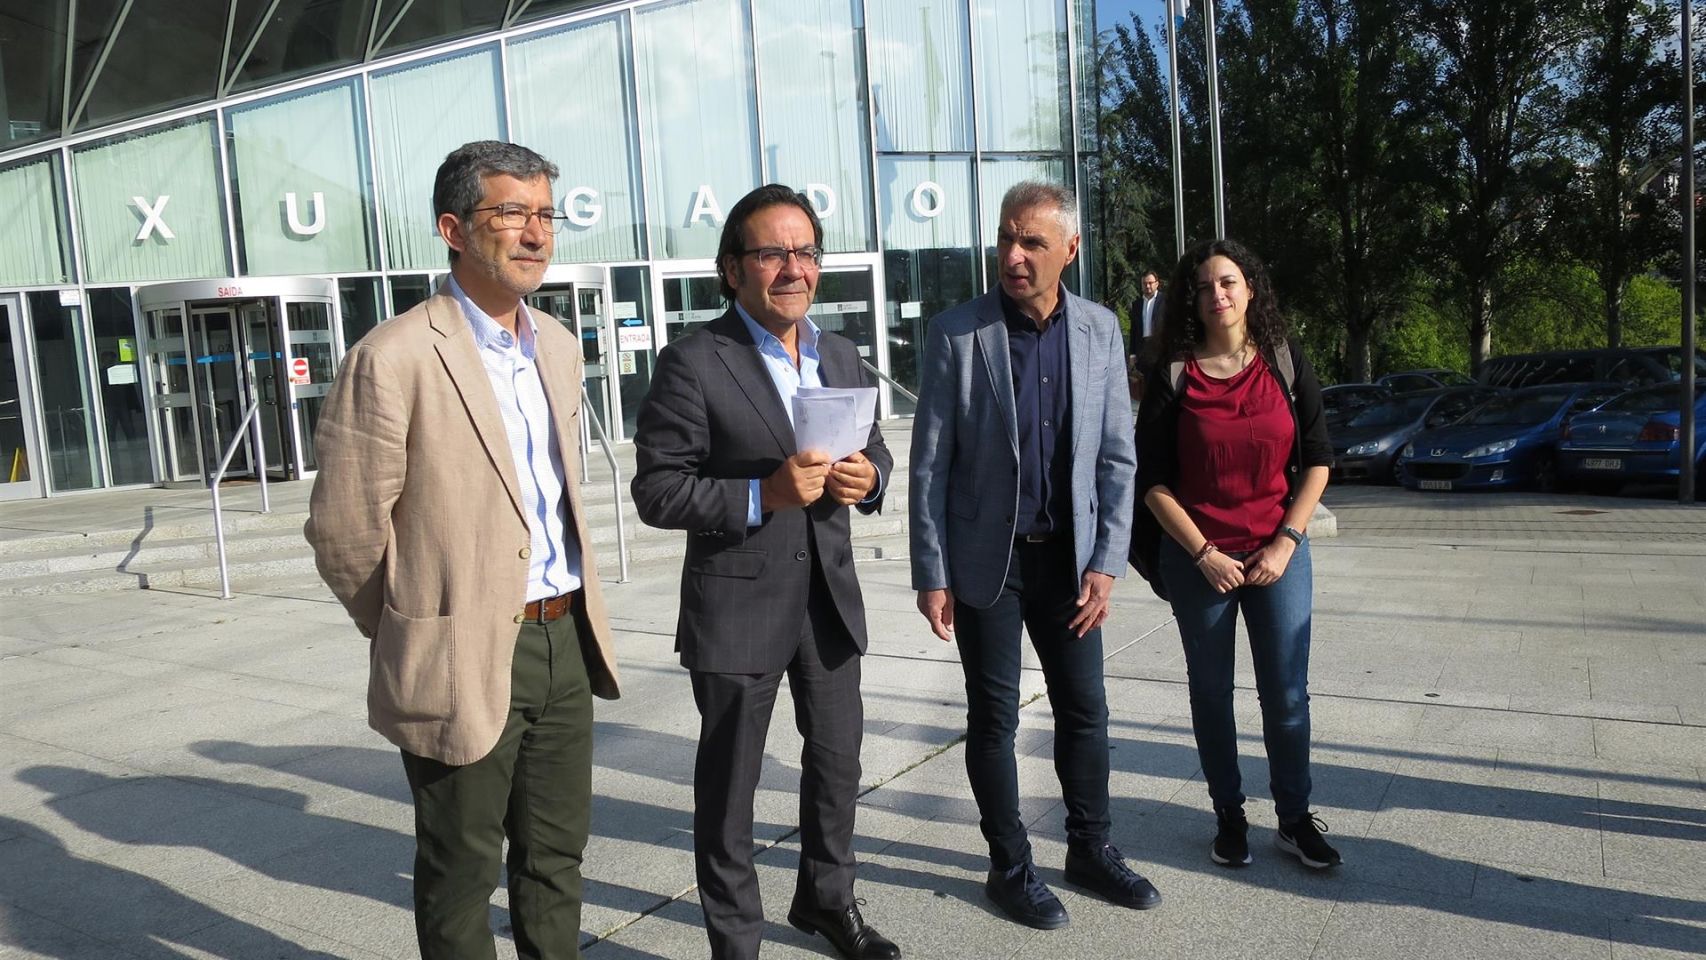 El candidato del BNG a la Alcaldía de Ourense, Luís Seara, acompañado por los diputados autonómicos Noa Presas e Iago Tabarés y el abogado Xoan Antón Pérez Lema a las puertas de los juzgados de Ourense.